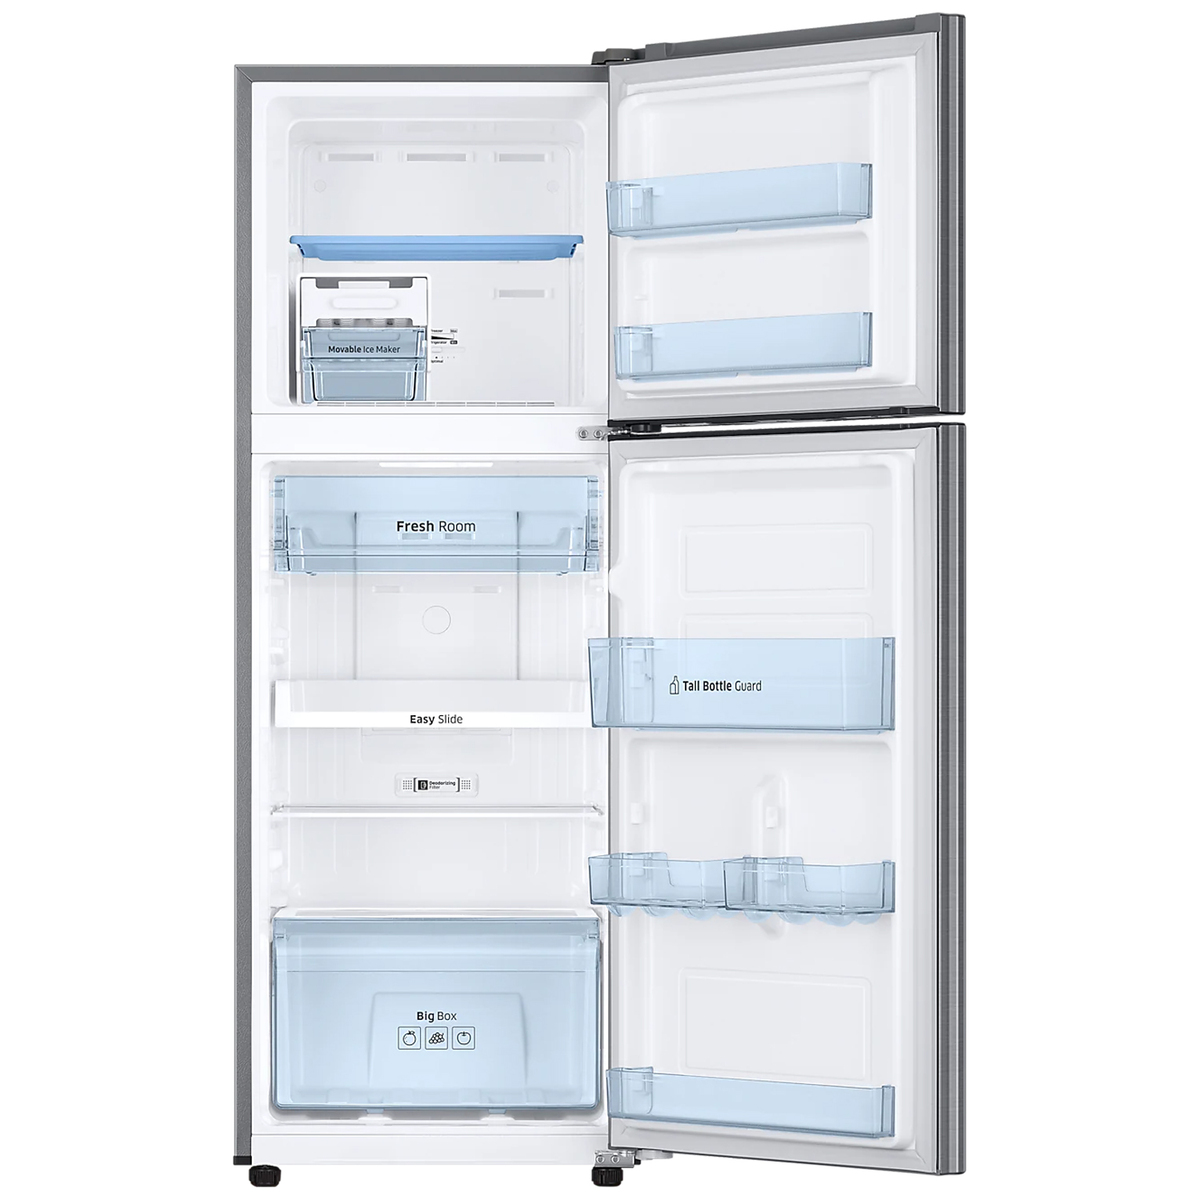 Samsung Refrigerator RT28T3453S9 253Ltr 3*